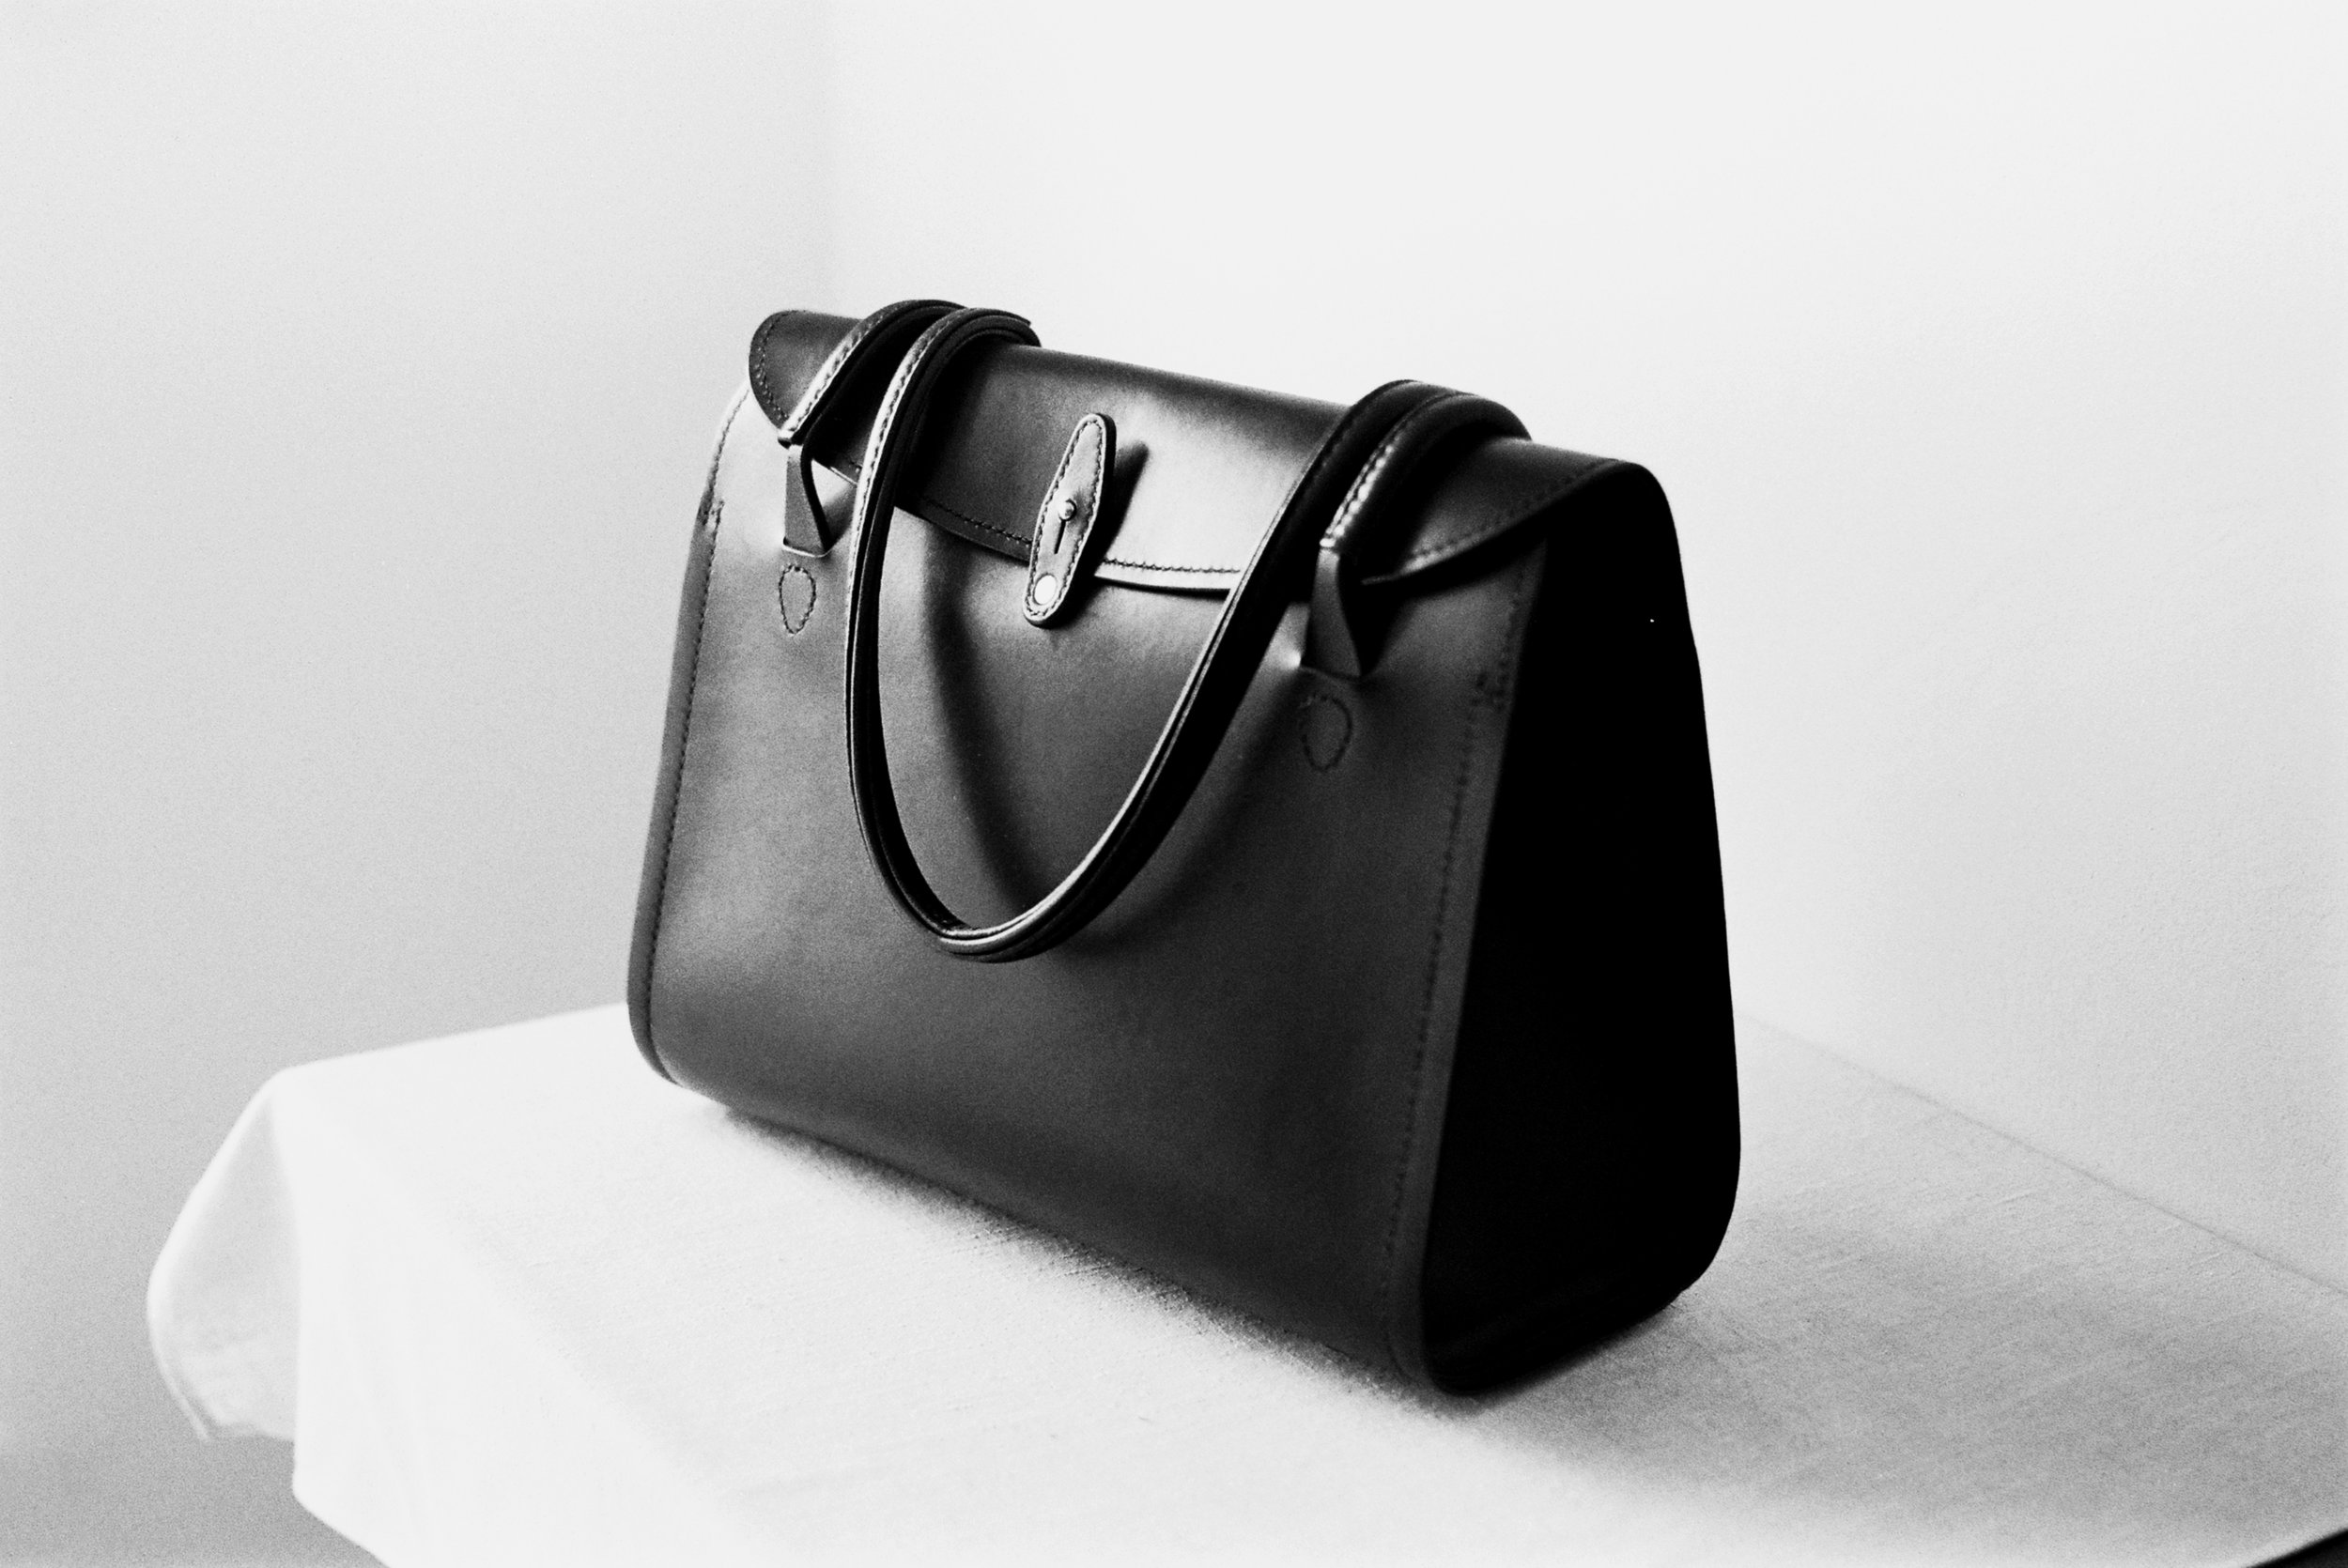 Tallowin Flatiron Handbag - completed